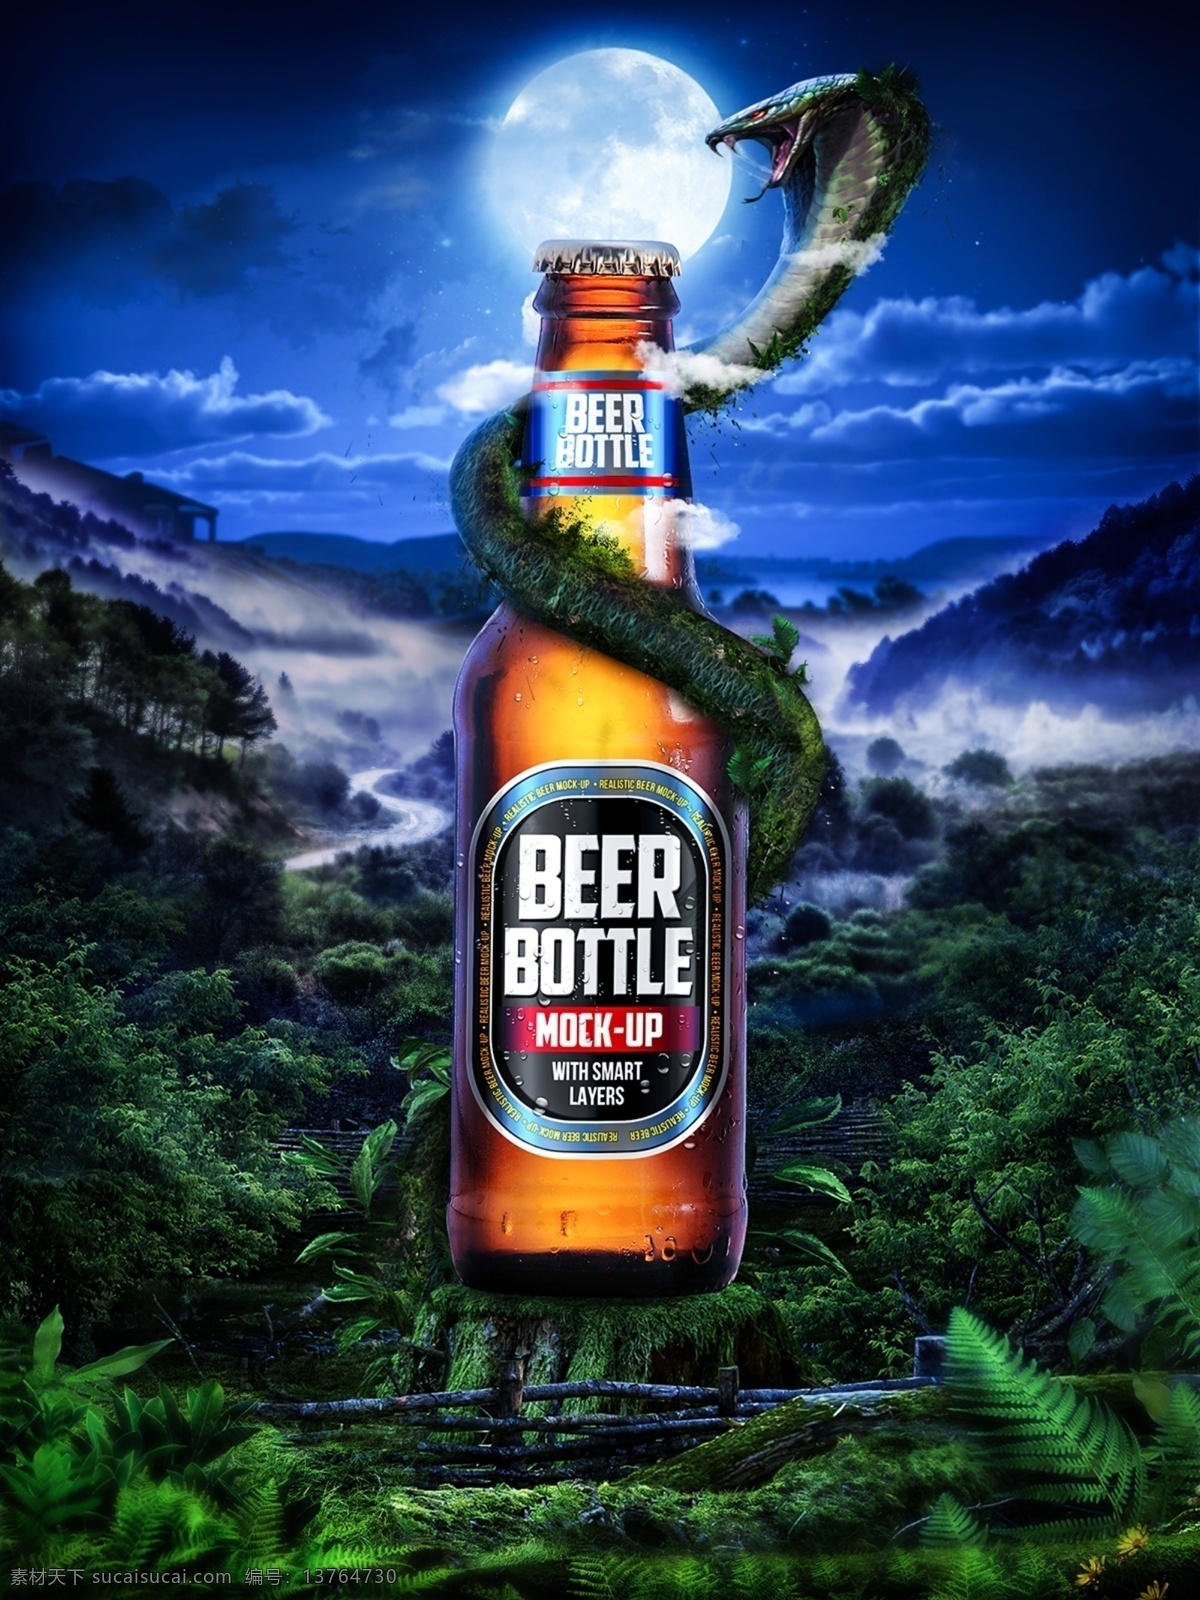 夏季 啤酒 宣传海报 源文件 psd源文件 啤酒海报 夏季海报设计 创意海报设计 眼镜蛇 山间美景 云海 云彩 月亮 创意啤酒海报